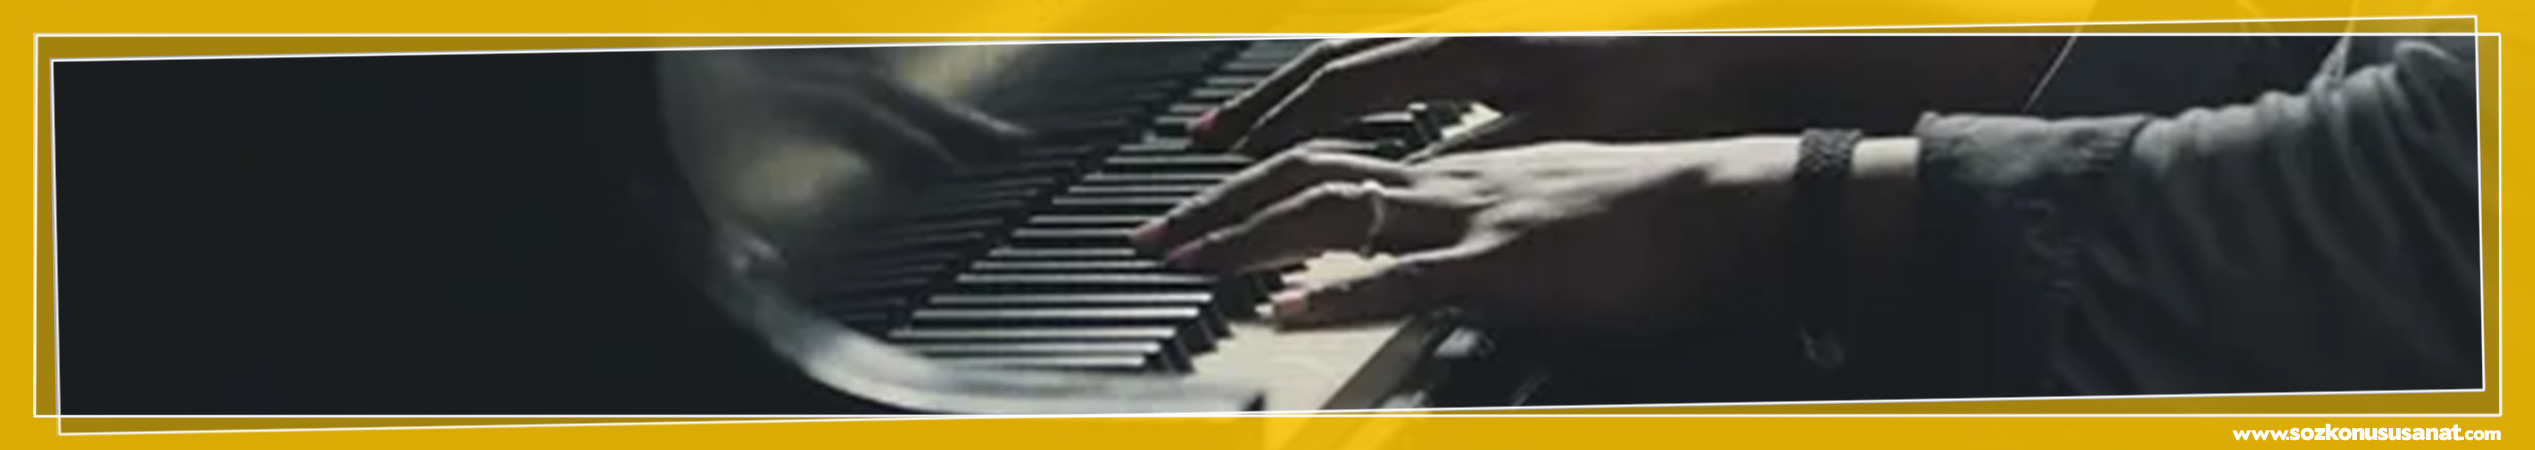 Piyano-Calmada-Parmak-Boyunun-Onemi